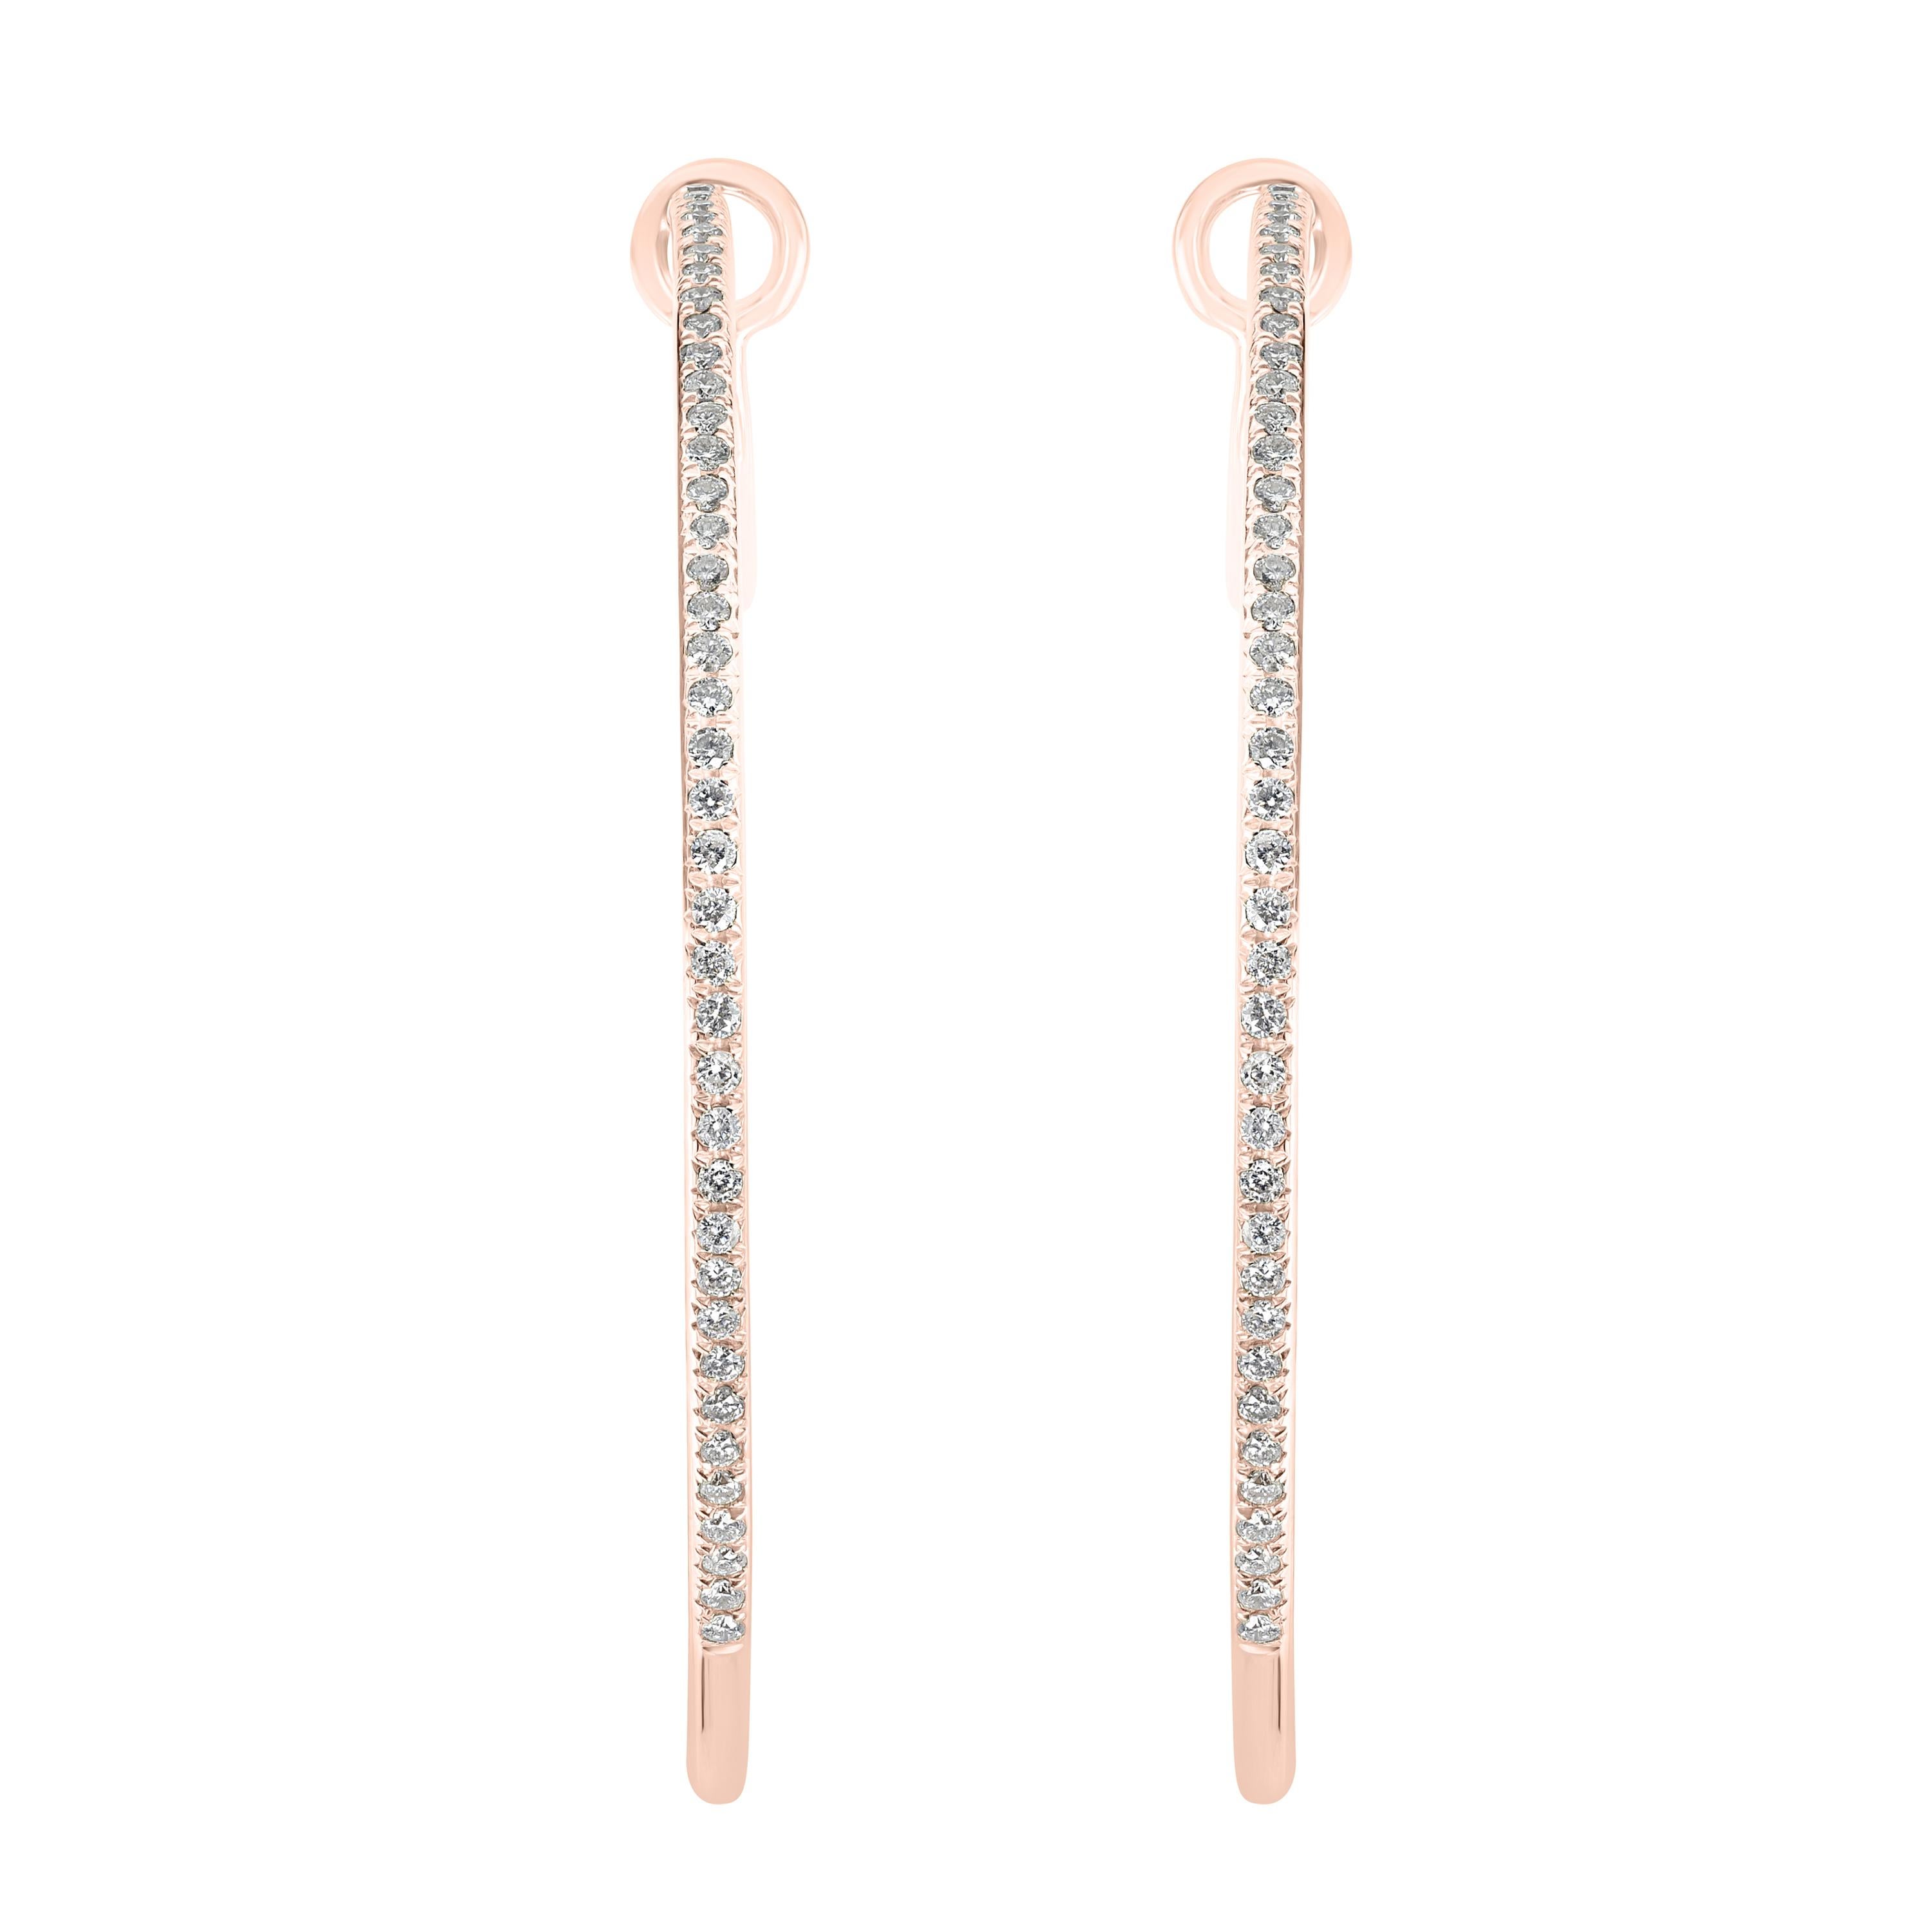 Ces boucles d'oreilles Luxle, étincelantes, sont une pièce d'allure intemporelle avec 136 diamants ronds de taille unique en serti micro-pavé. Ces boucles d'oreilles en or rose sont dotées d'un fond Omega et de diamants pesant 0,73 cwt. Les diamants